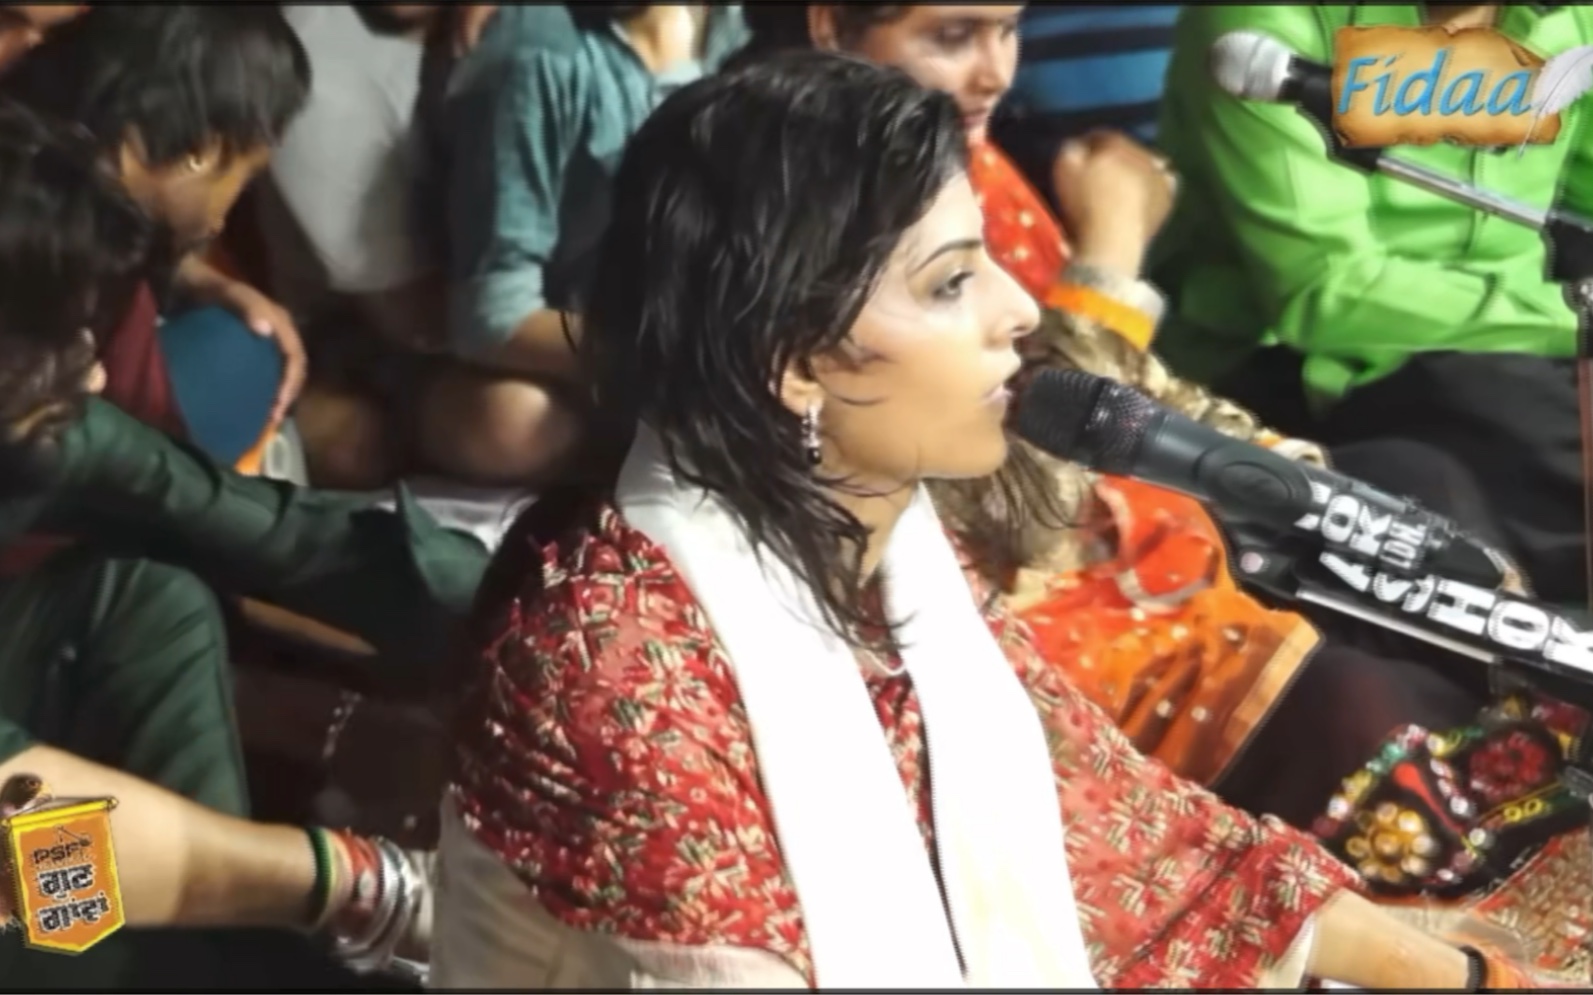 【印度斯坦音乐】苏菲派Qawwali系列:“咖喱drill”努兰姐妹live宝莱坞金曲PatakhaGuddi